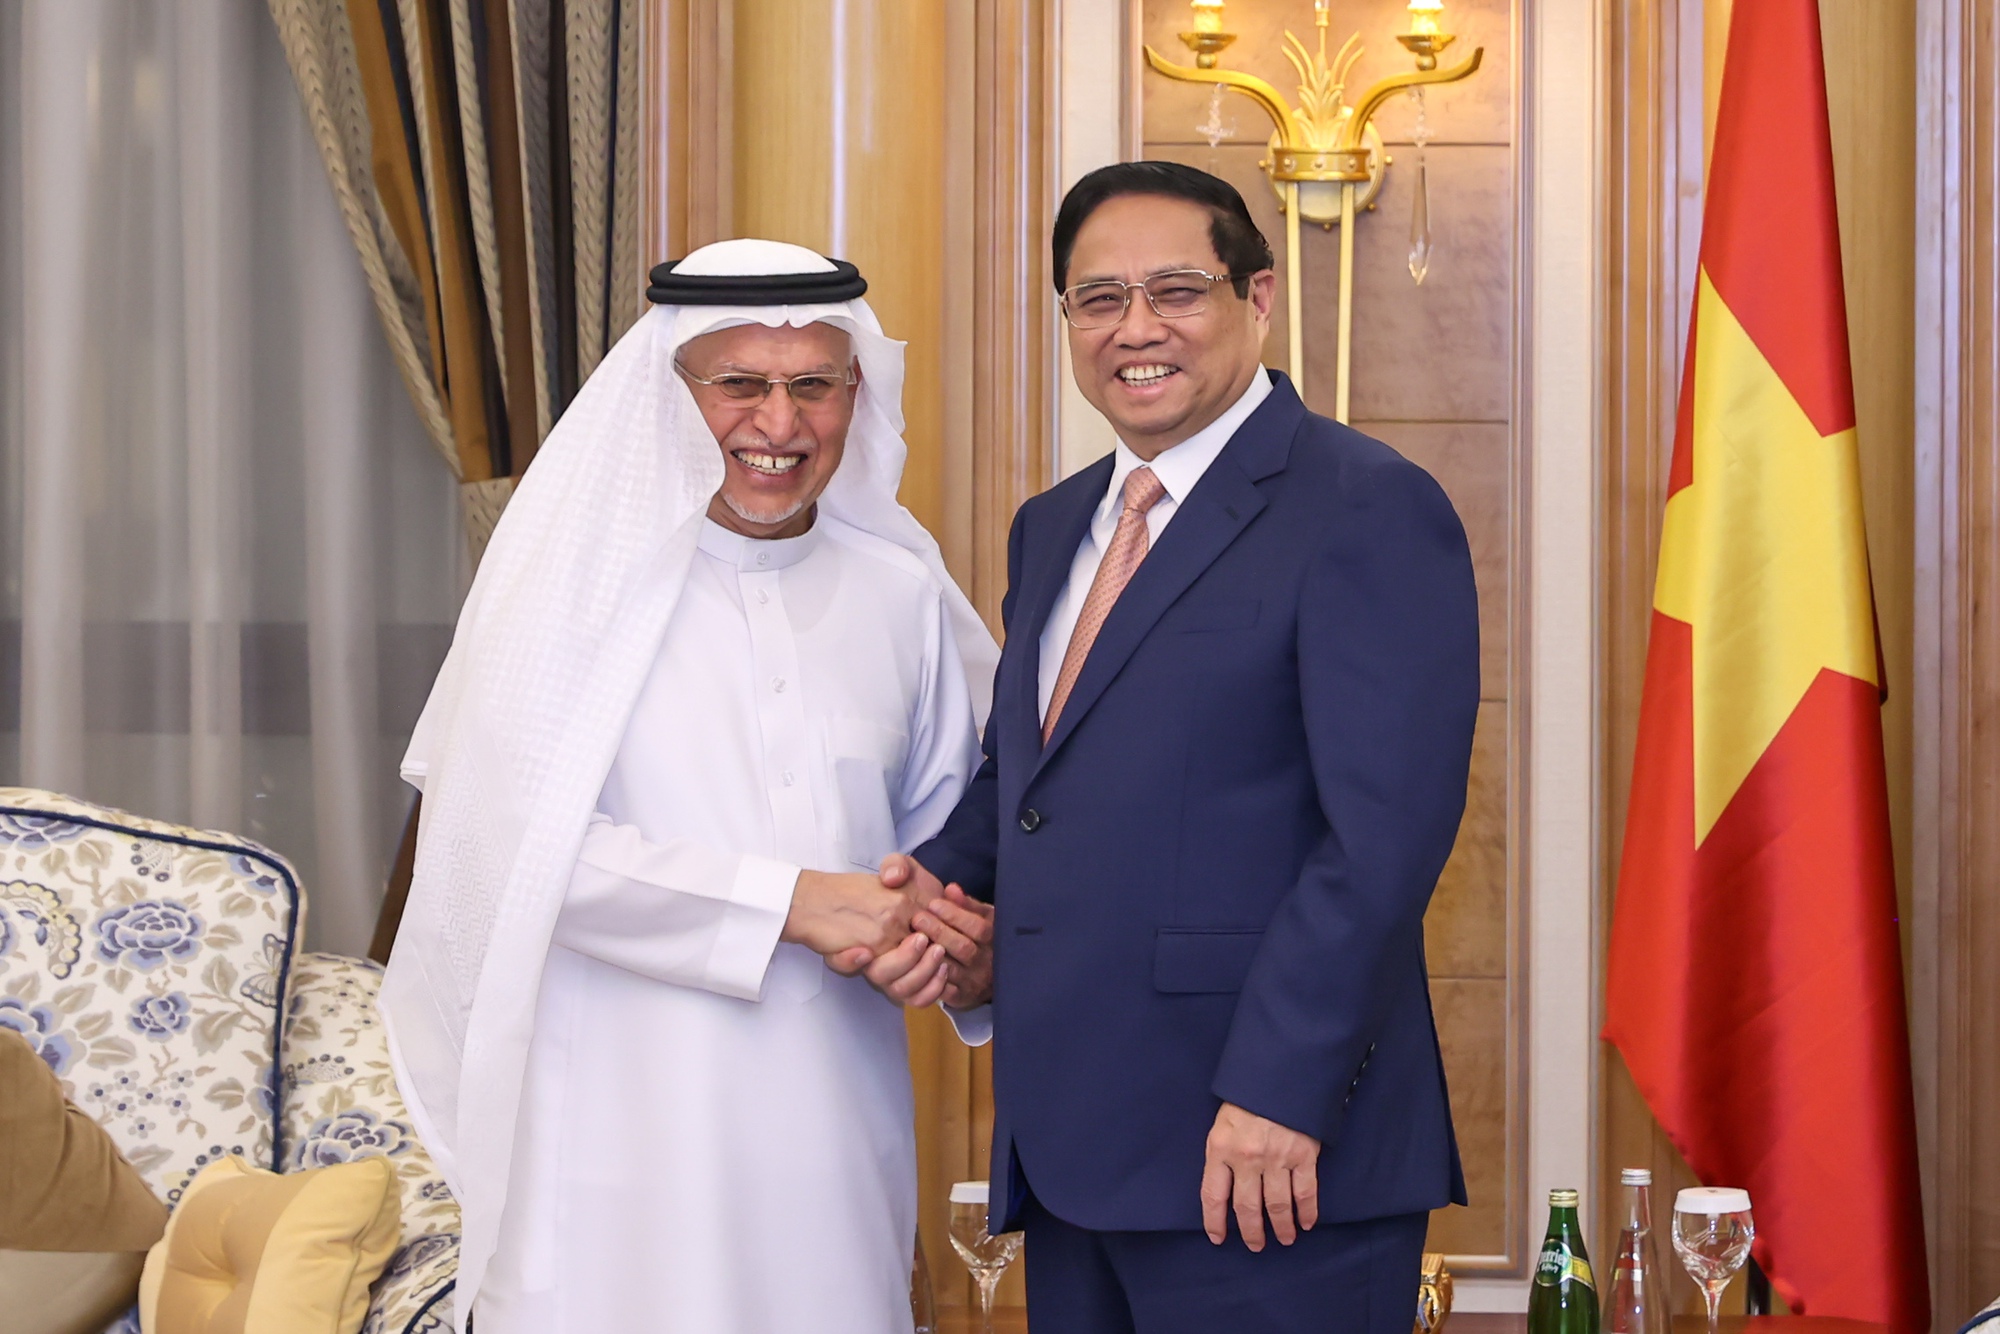 Thủ tướng Phạm Minh Chính tiếp Chủ tịch Tập đoàn Abdulrahman Al Zamil tại Saudi Arabia - Ảnh: VGP/Nhật Bắc